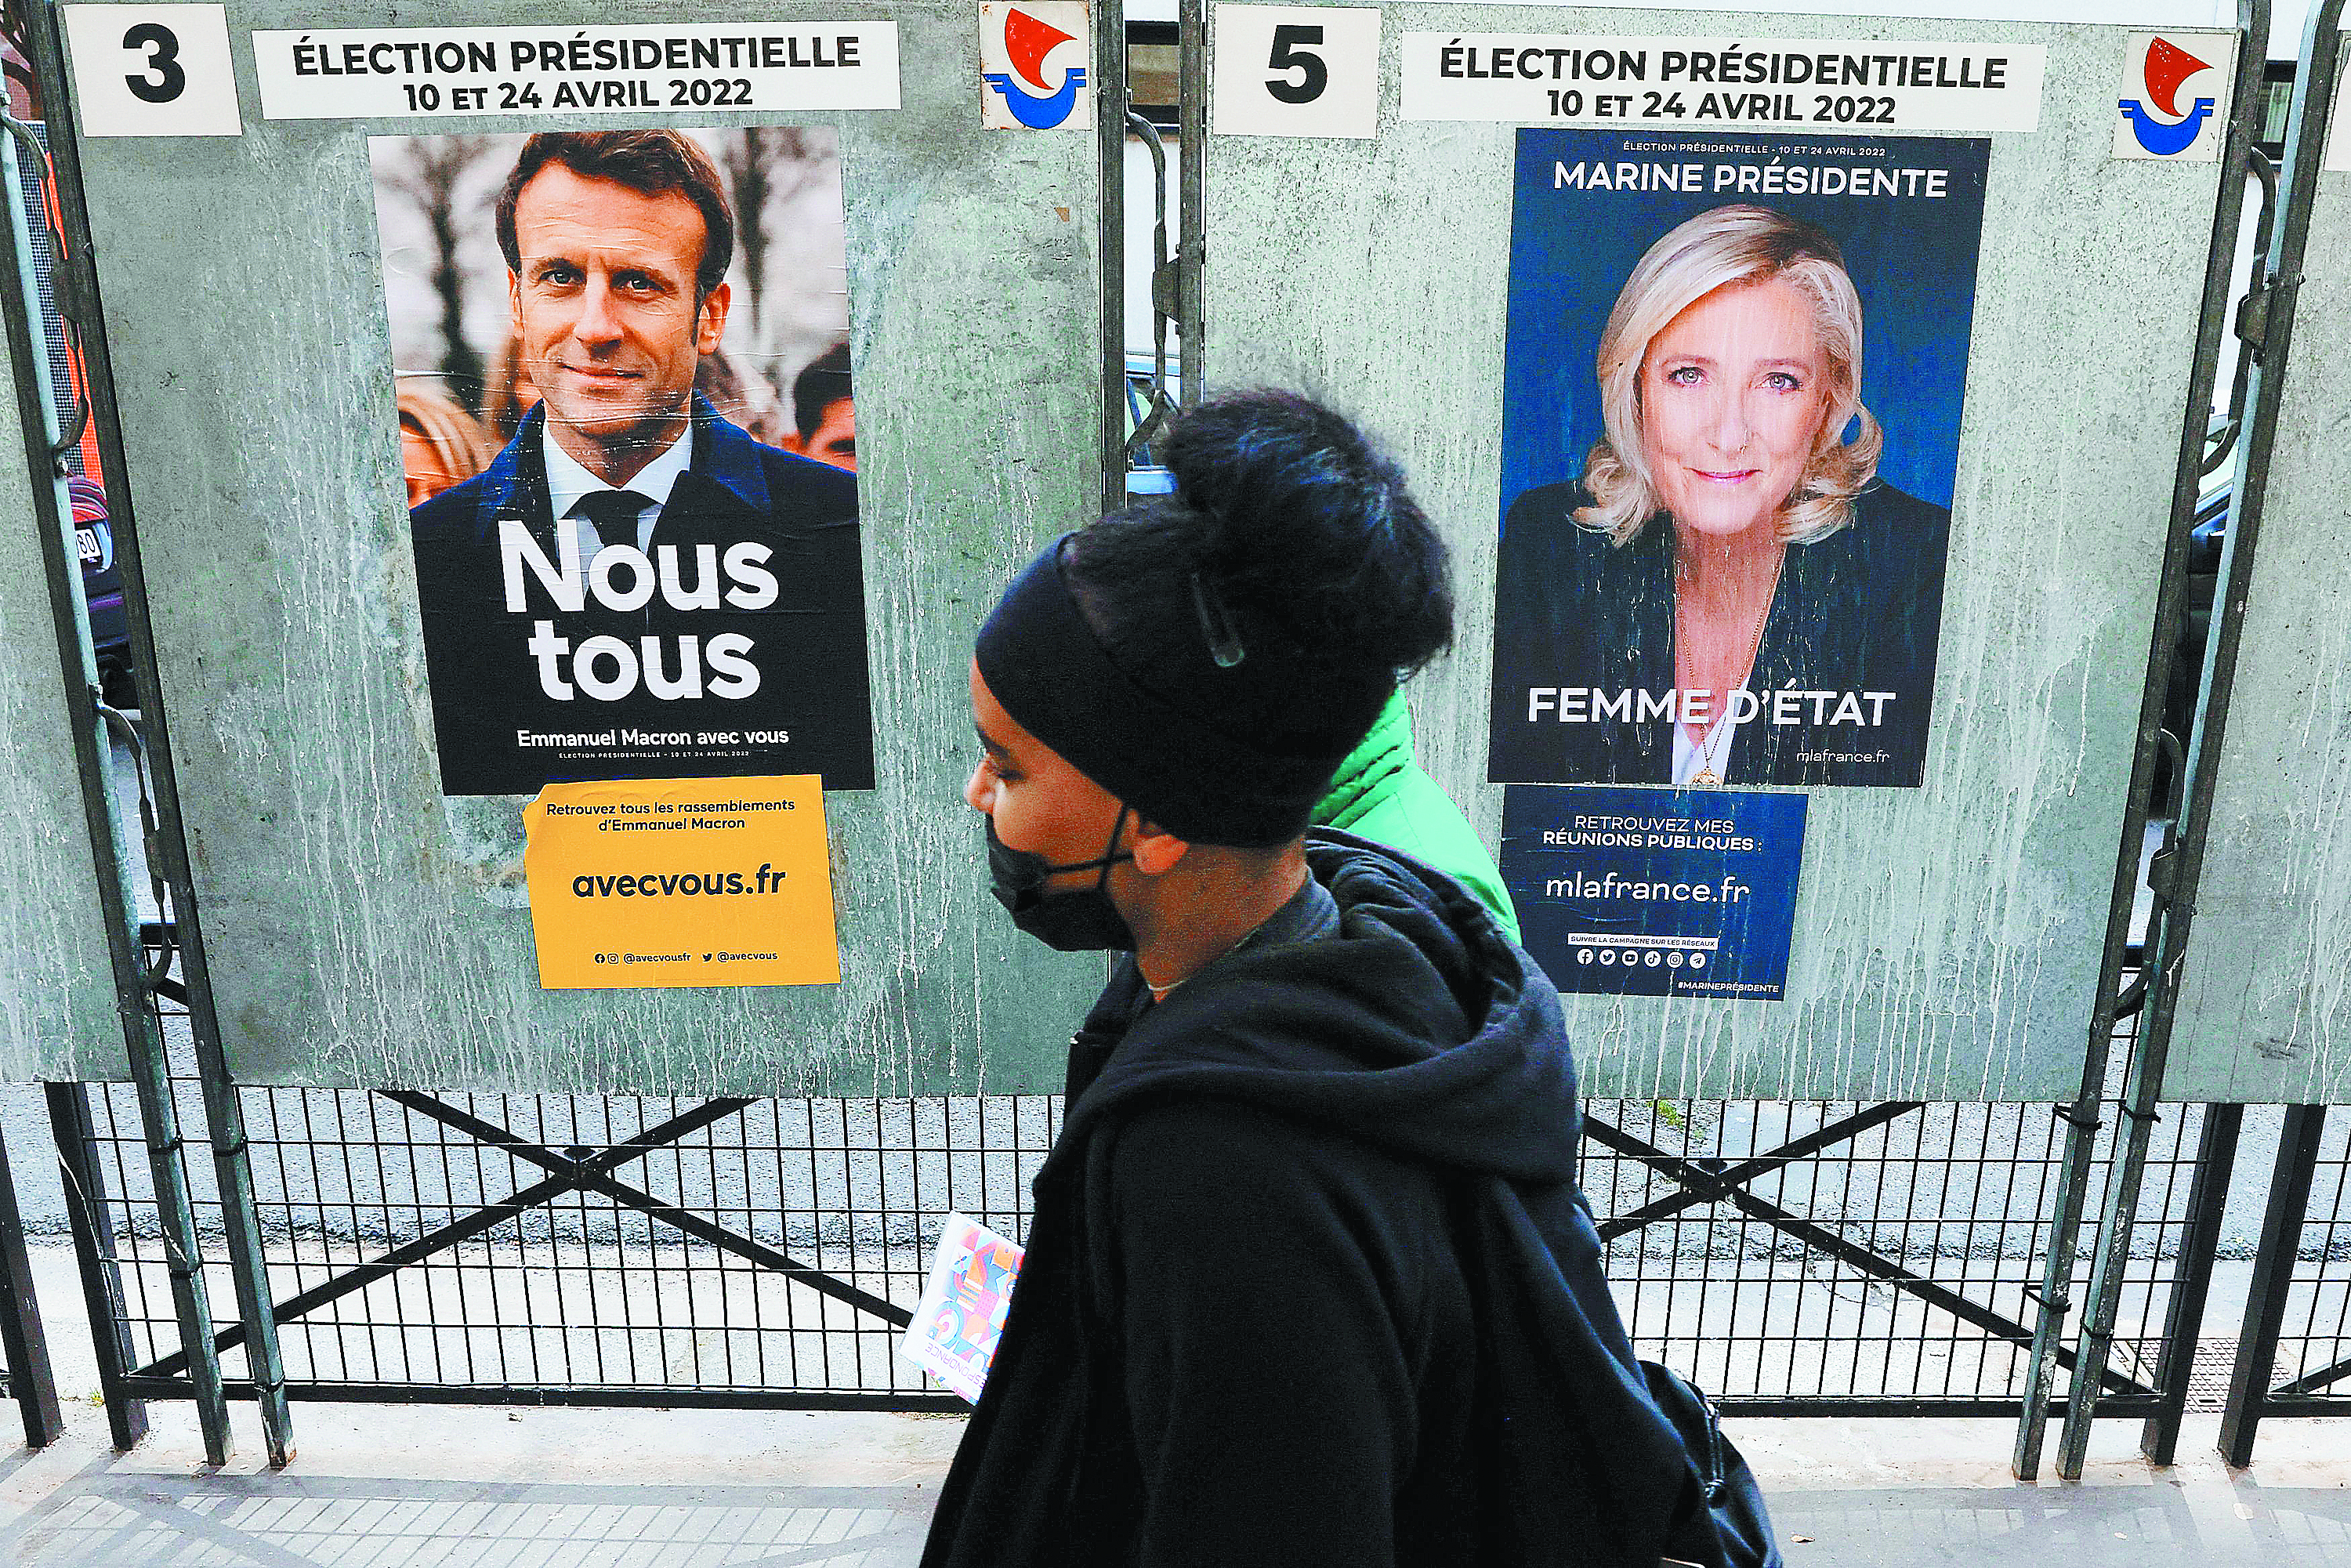 Εκλογικό θρίλερ α λα γαλλικά: Επανάληψη του 2017 ή ολική ανατροπή;